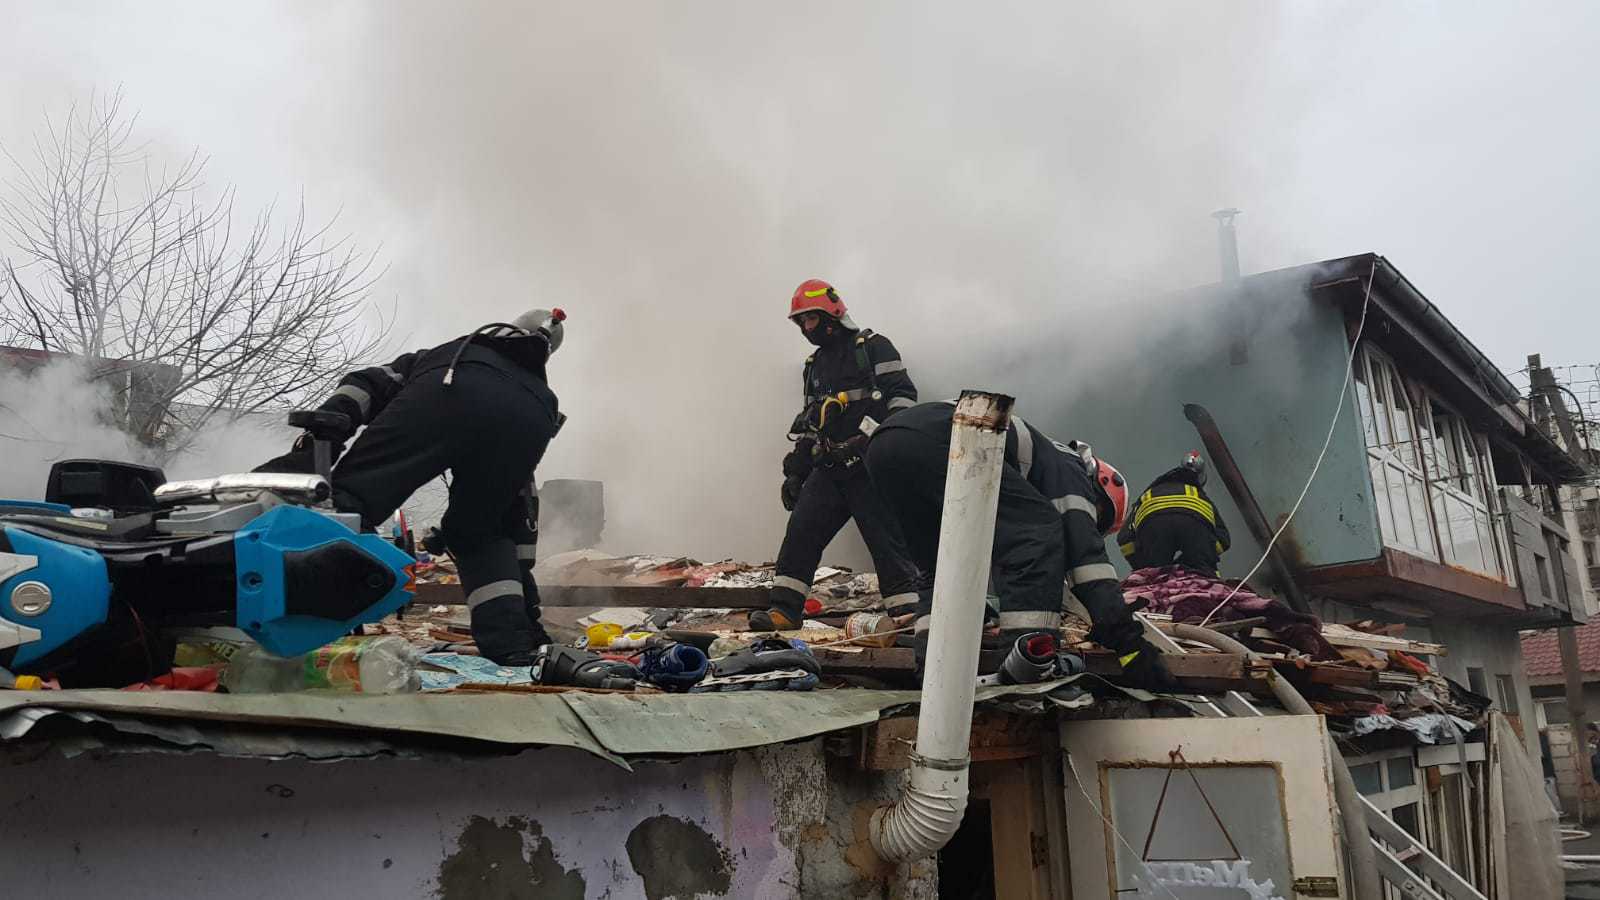 BREAKING NEWS. Incendii în București! FOTO. Mai multe imobile sunt în flăcări